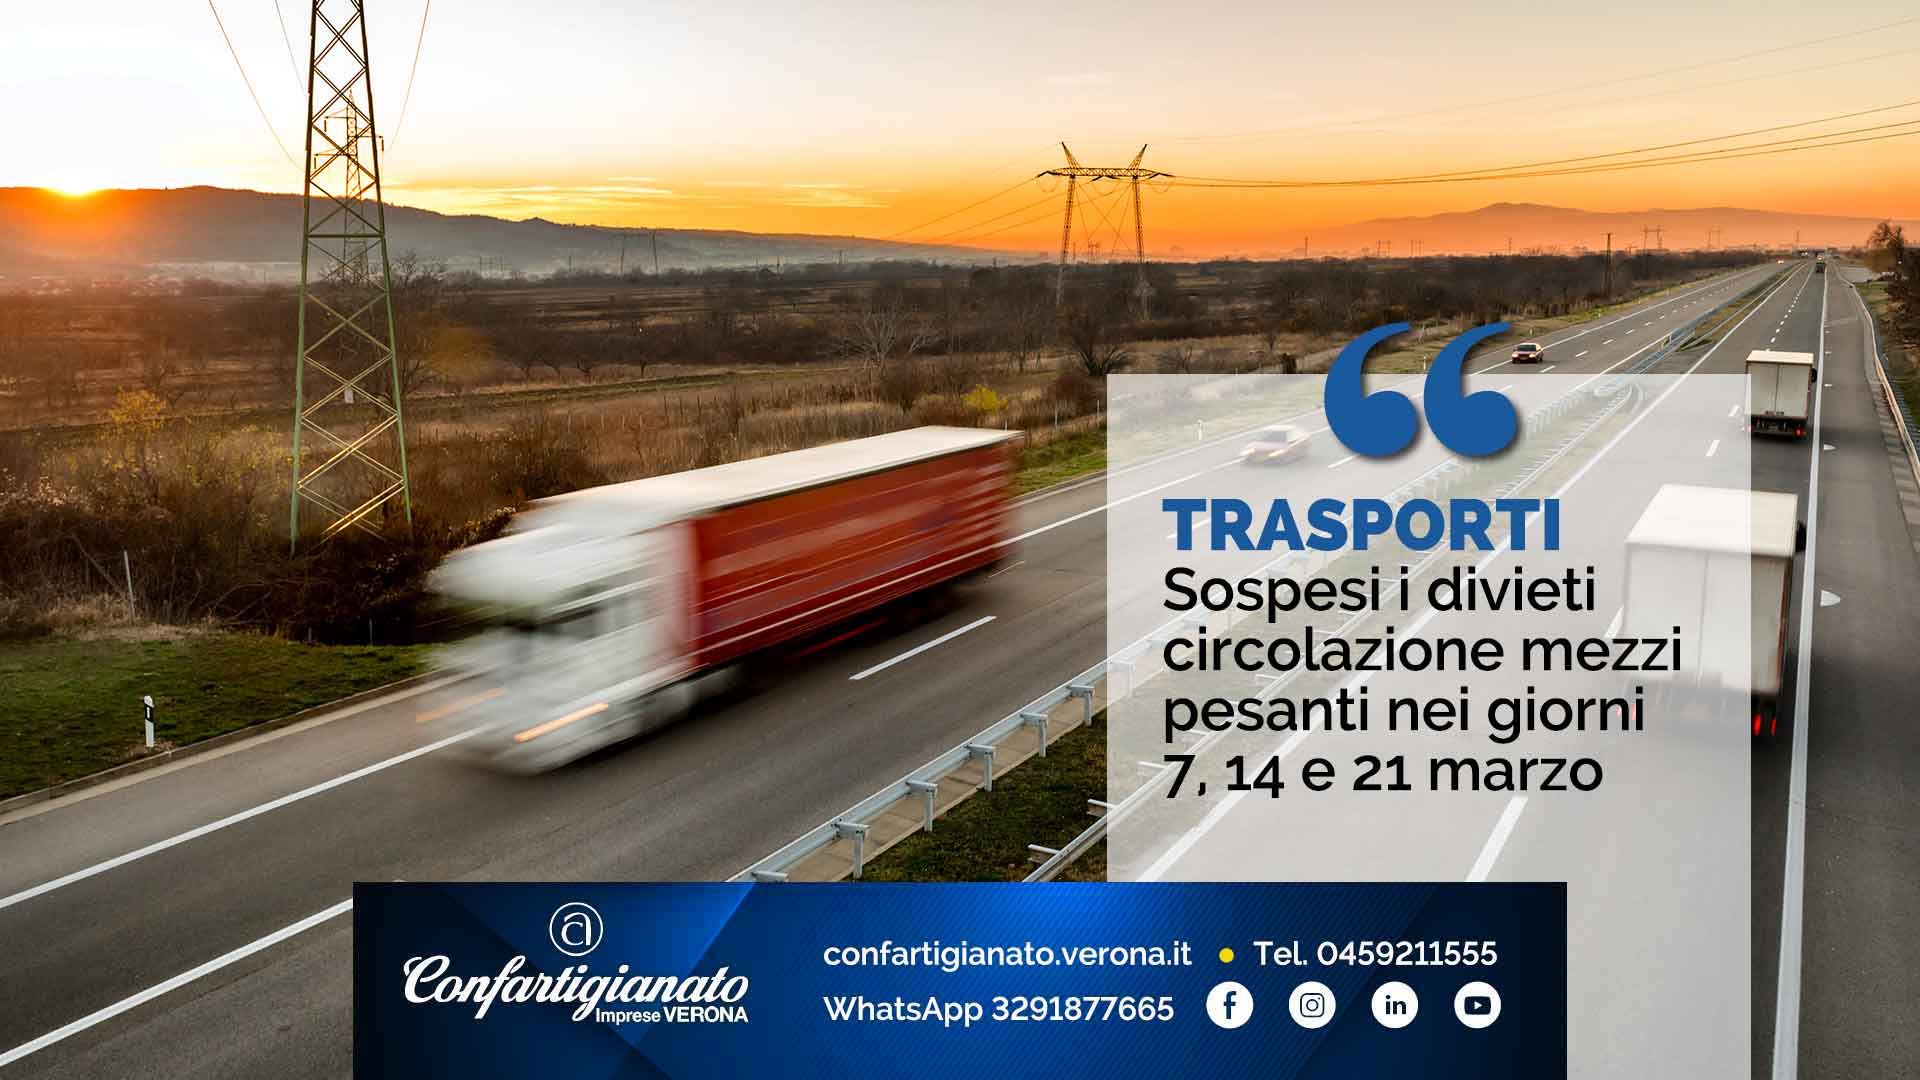 TRASPORTI – Sospesi divieti circolazione mezzi pesanti nei giorni 7, 14 e 21 marzo